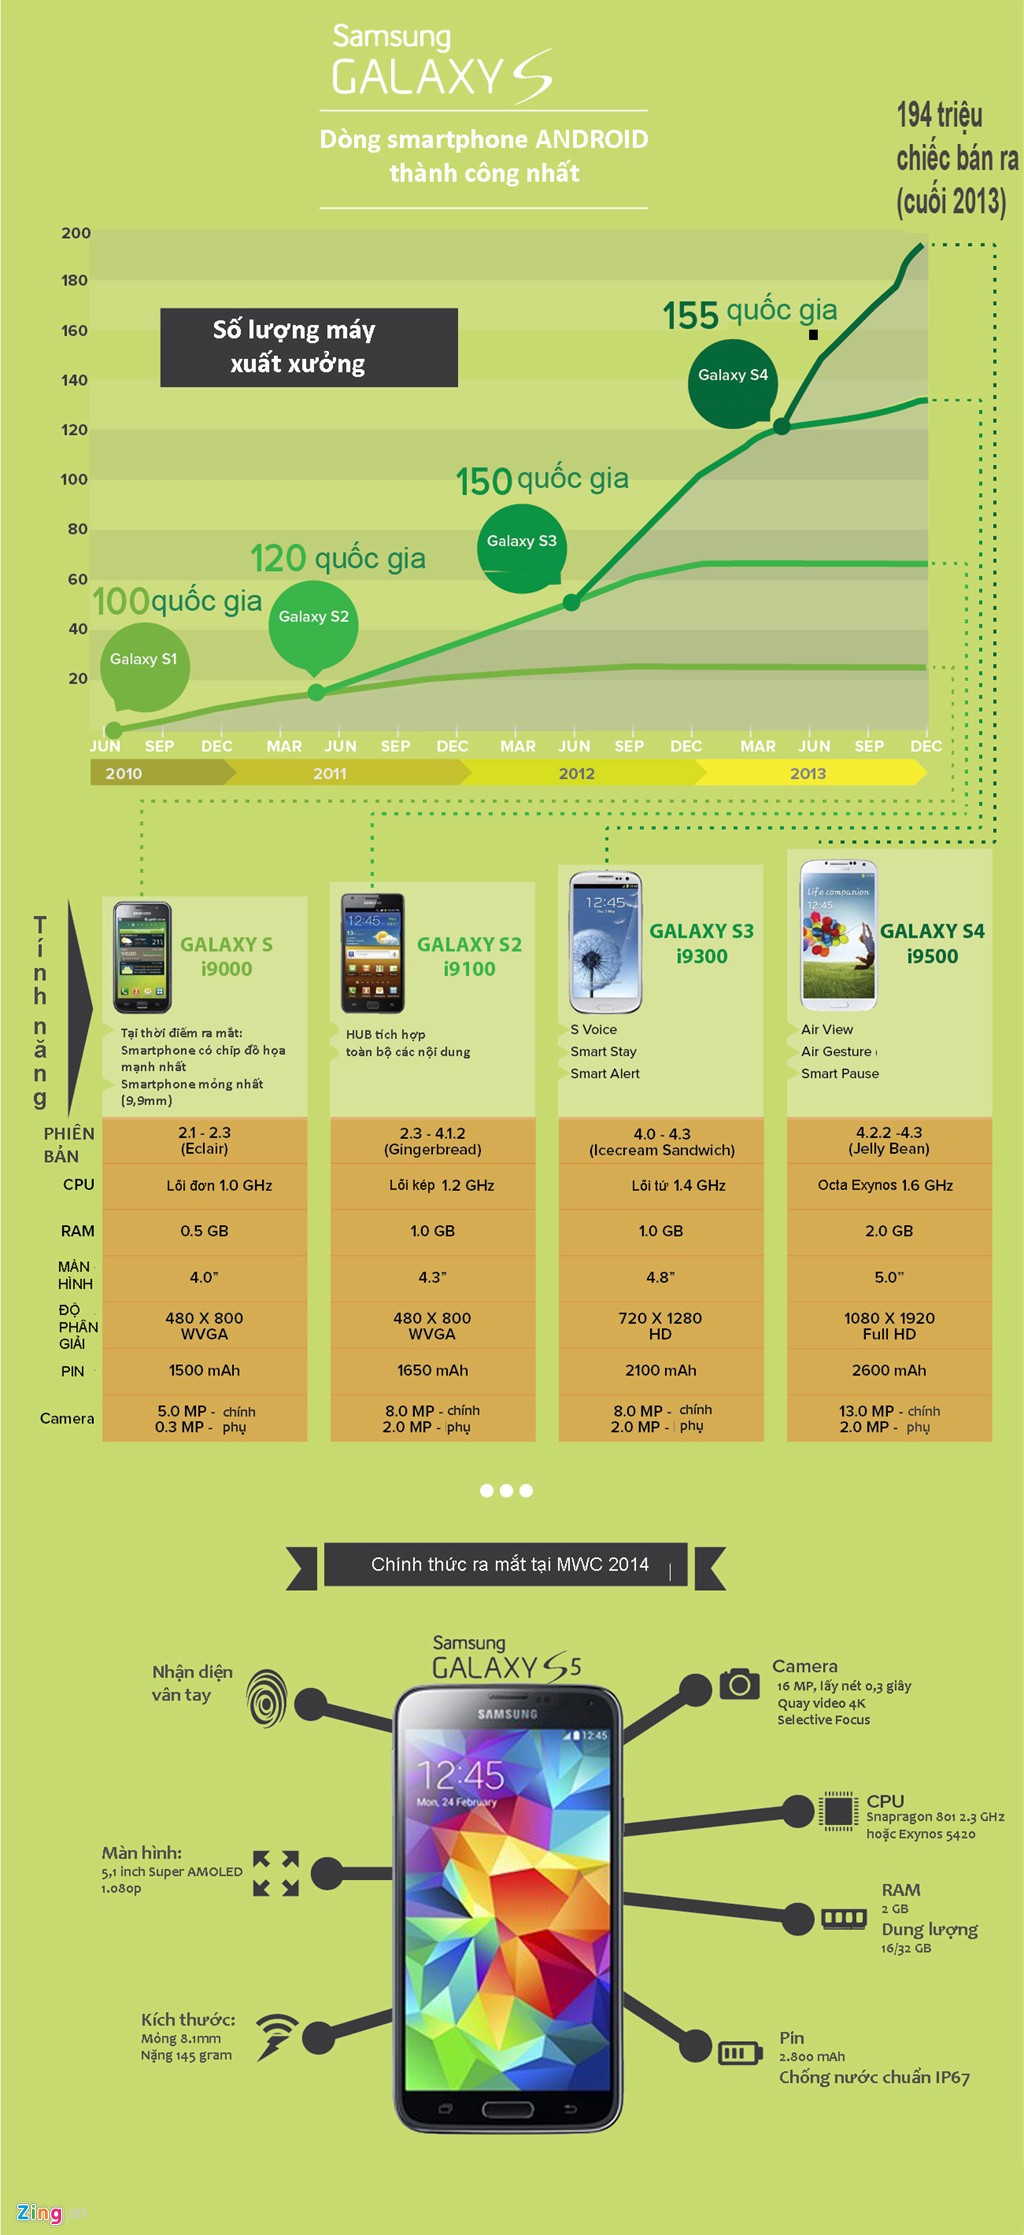 [Infographic] Những cải tiến qua 5 đời Samsung Galaxy S (1)